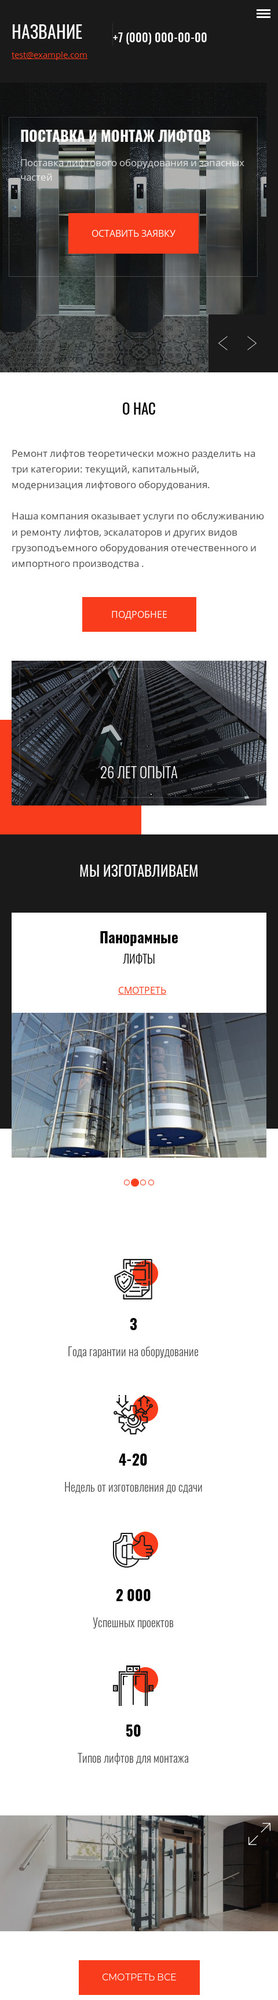 Готовый Сайт-Бизнес № 2533276 - Монтаж лифтового оборудования (Мобильная версия)